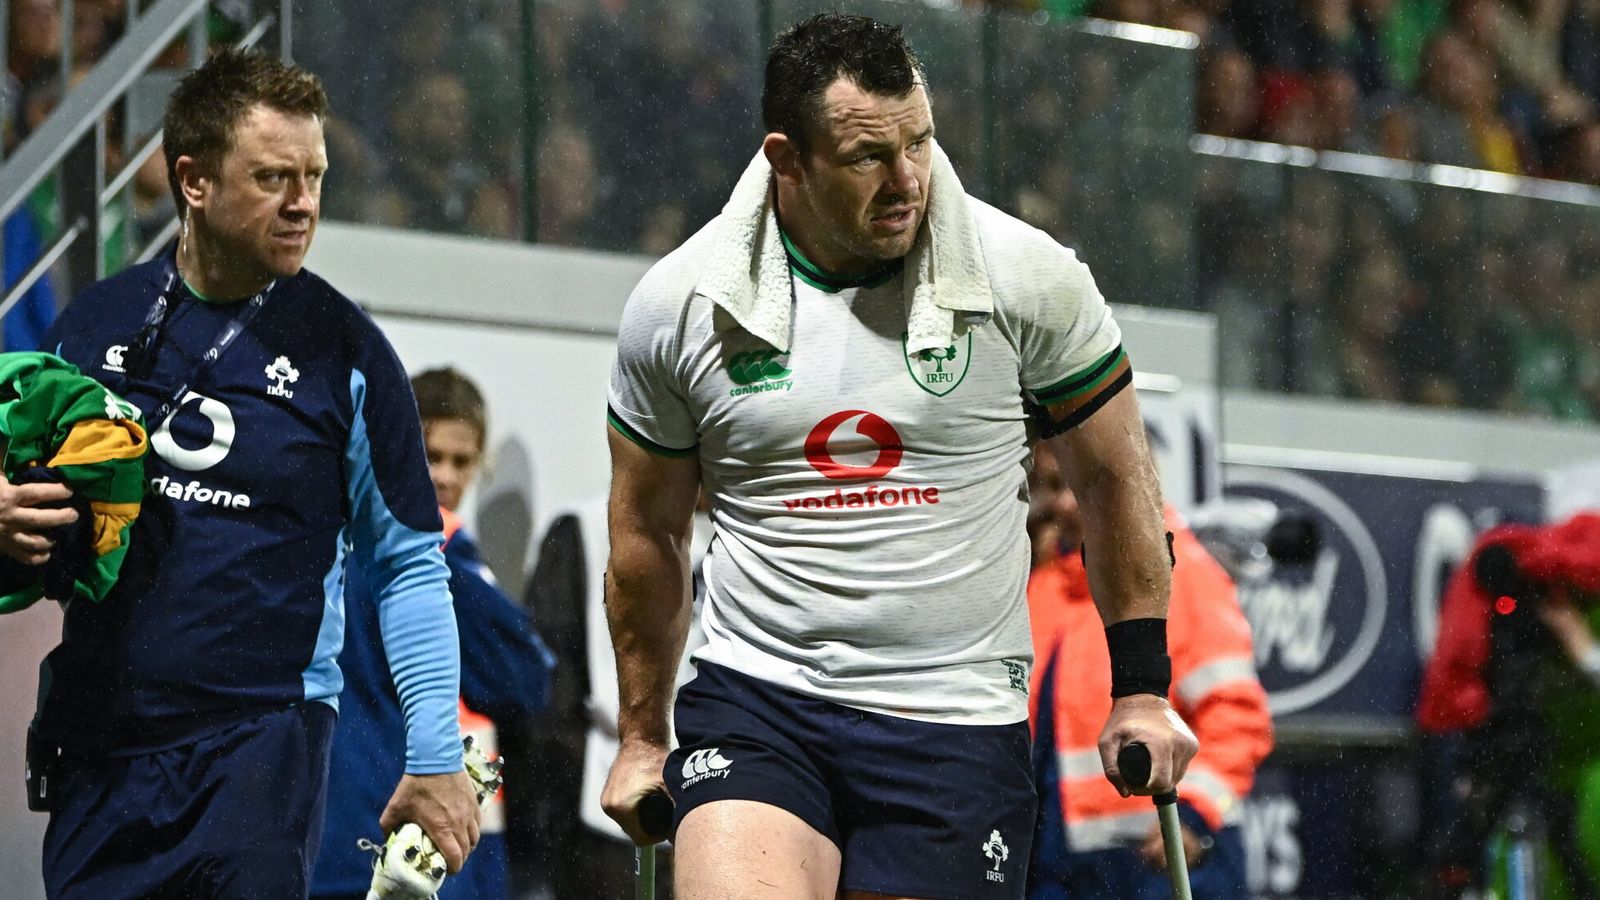 Echipă pentru Cupa Mondială de Rugby din Irlanda: Cian Healy a exclus din cauza accidentării în echipa lui Andy Farrell a căpitanilor lui Johnny Sexton |  Știri Rugby Union